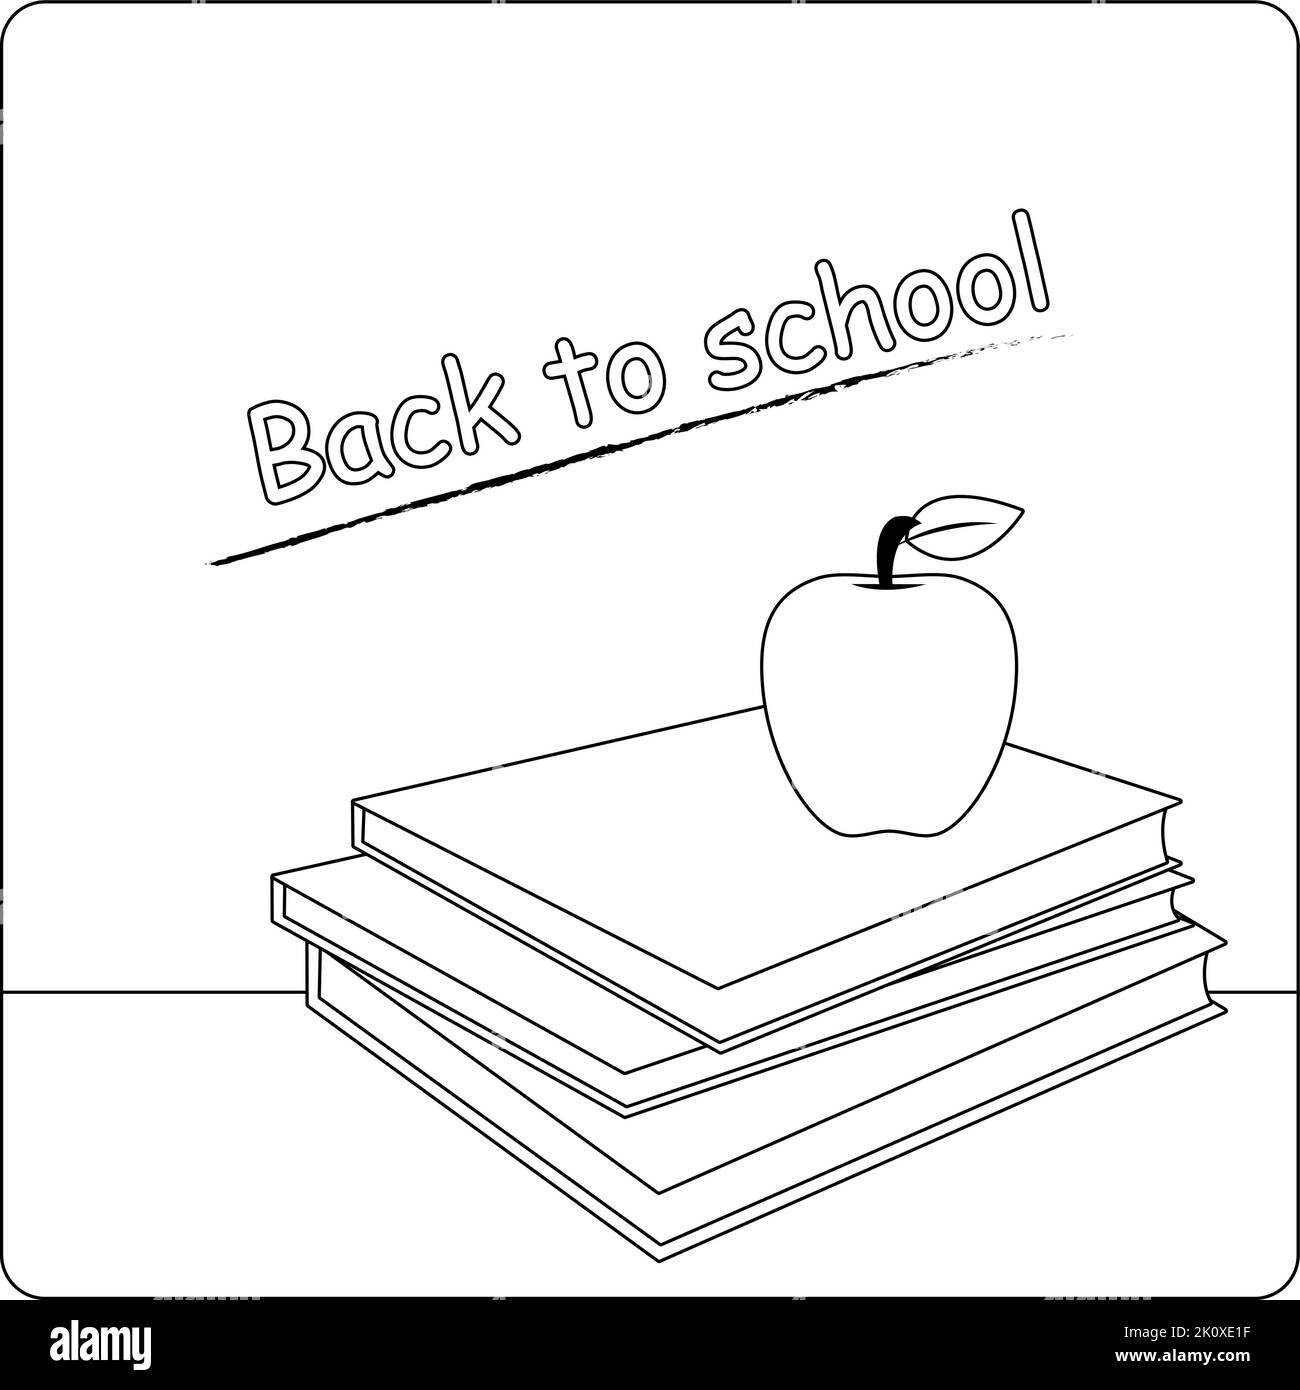 Schulklasse mit einer Tafel, Büchern und einem Apfel. Vektor schwarz-weiß Malseite Stock Vektor